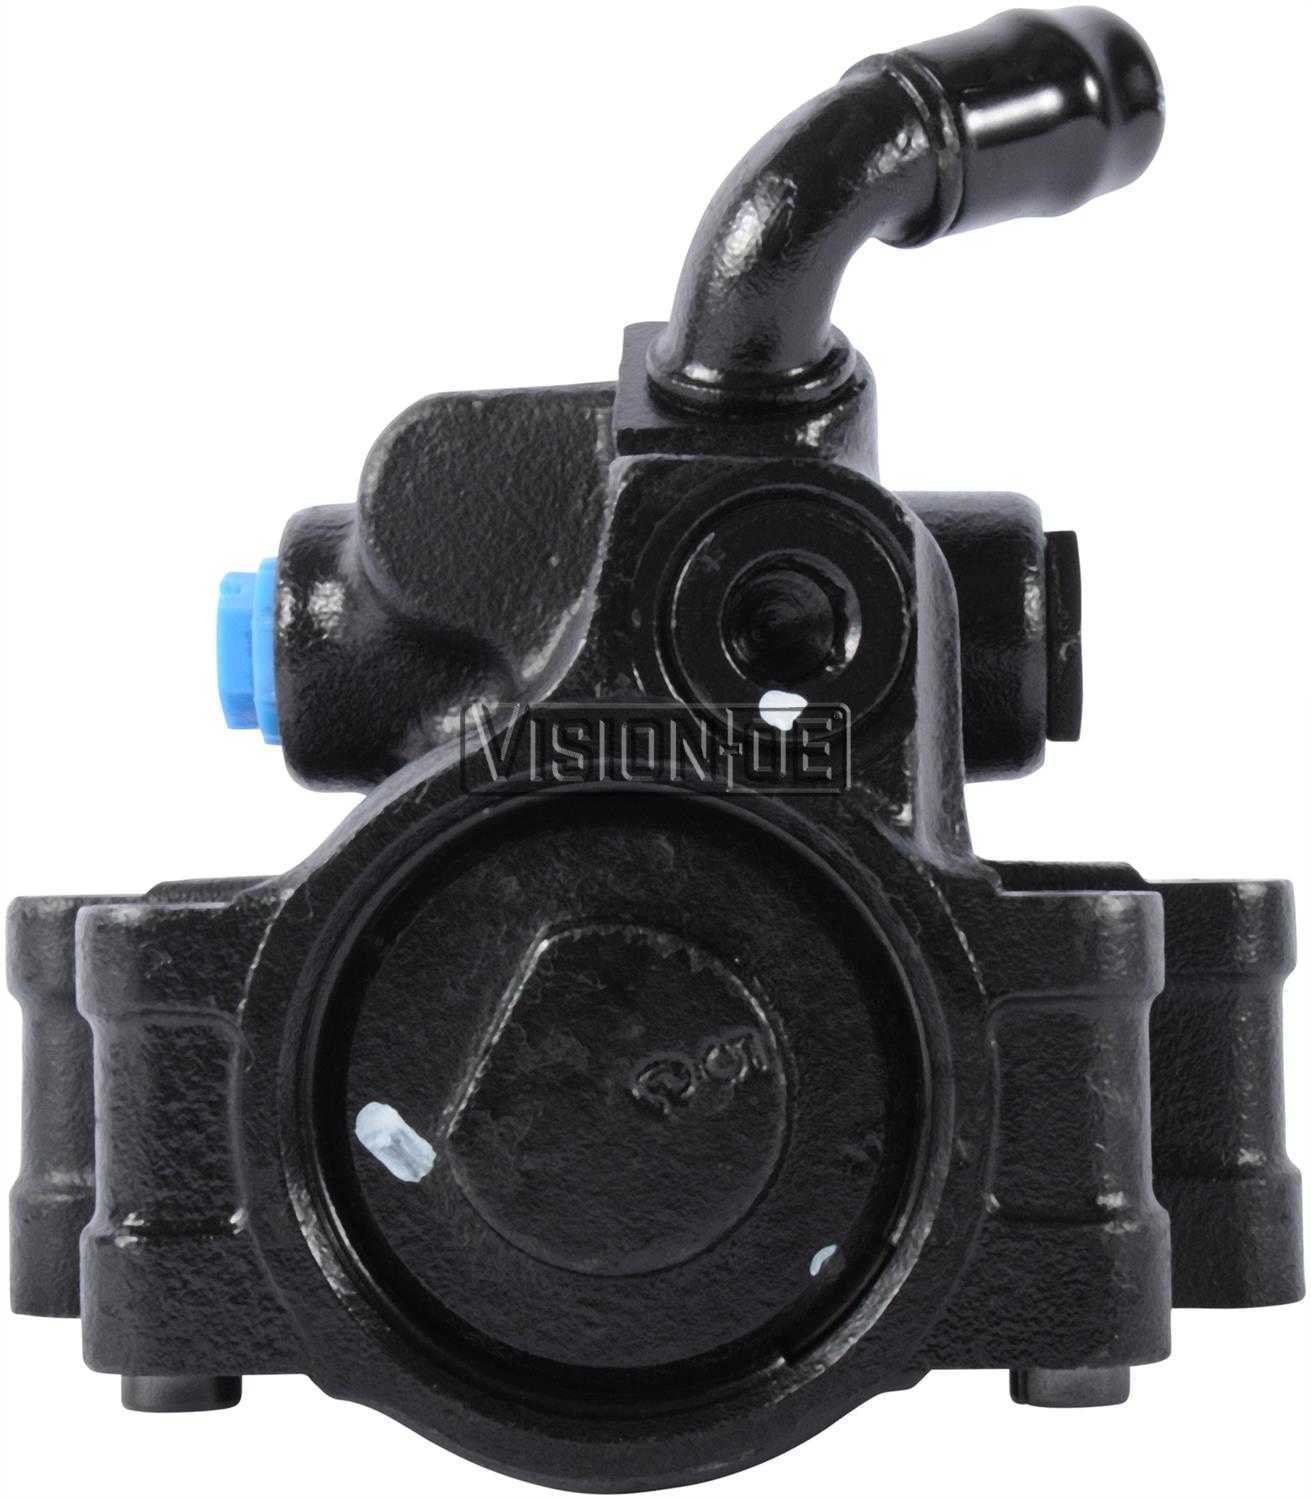 VISION-OE - Reman Power Steering Pump - VOE 712-0148